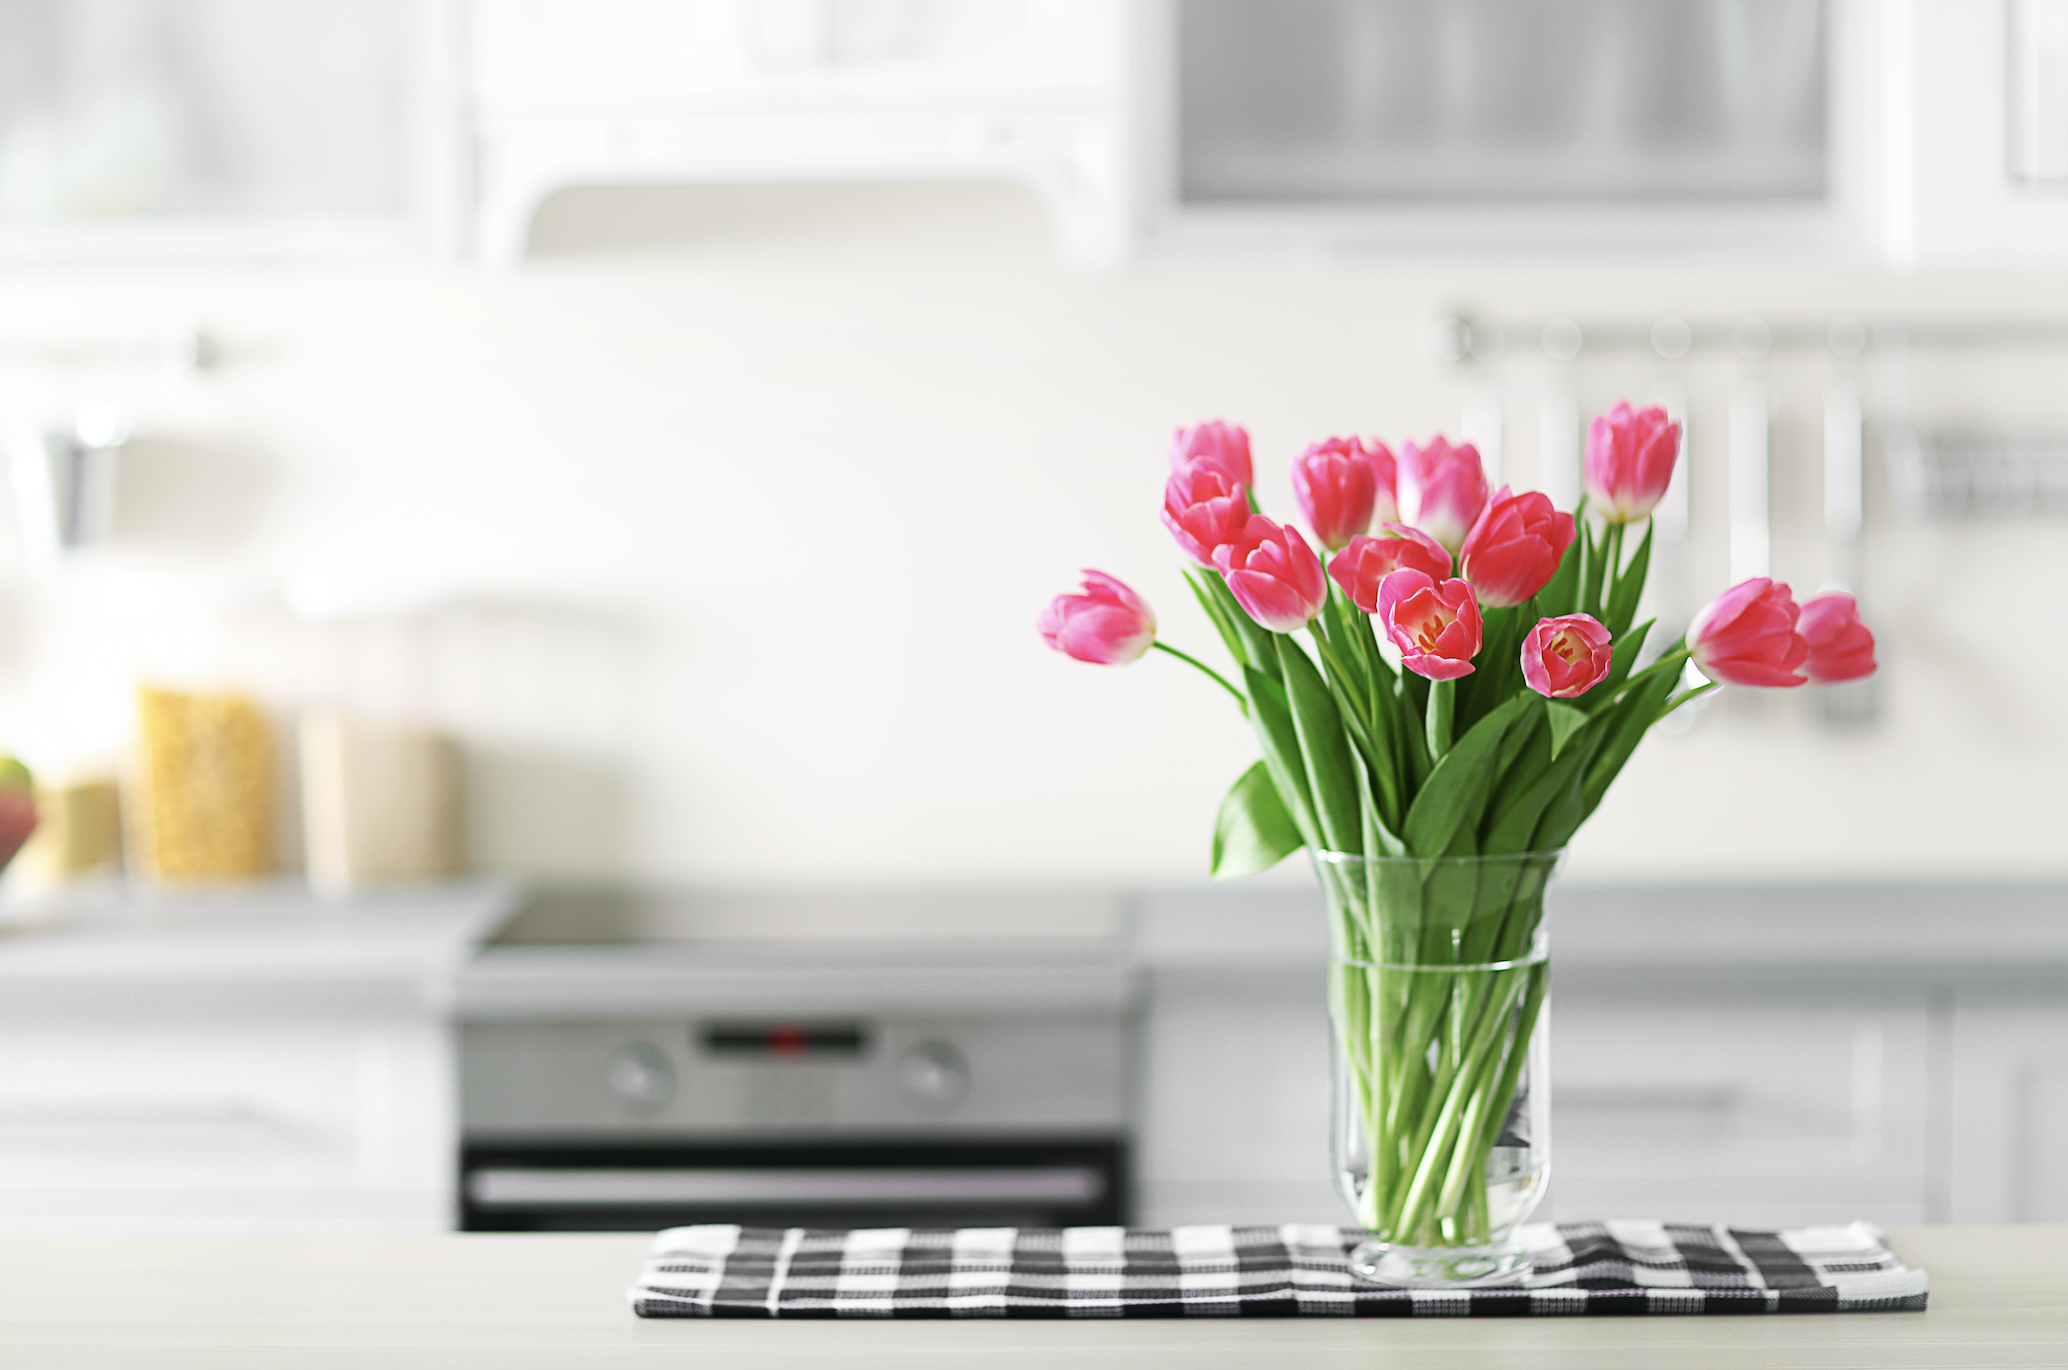 Тюльпаны в холодильнике без воды можно ли. Букет тюльпанов в интерьере. Тюльпаны в интерьере кухни. Цветы на кухонном столе. Цветы на кухне.